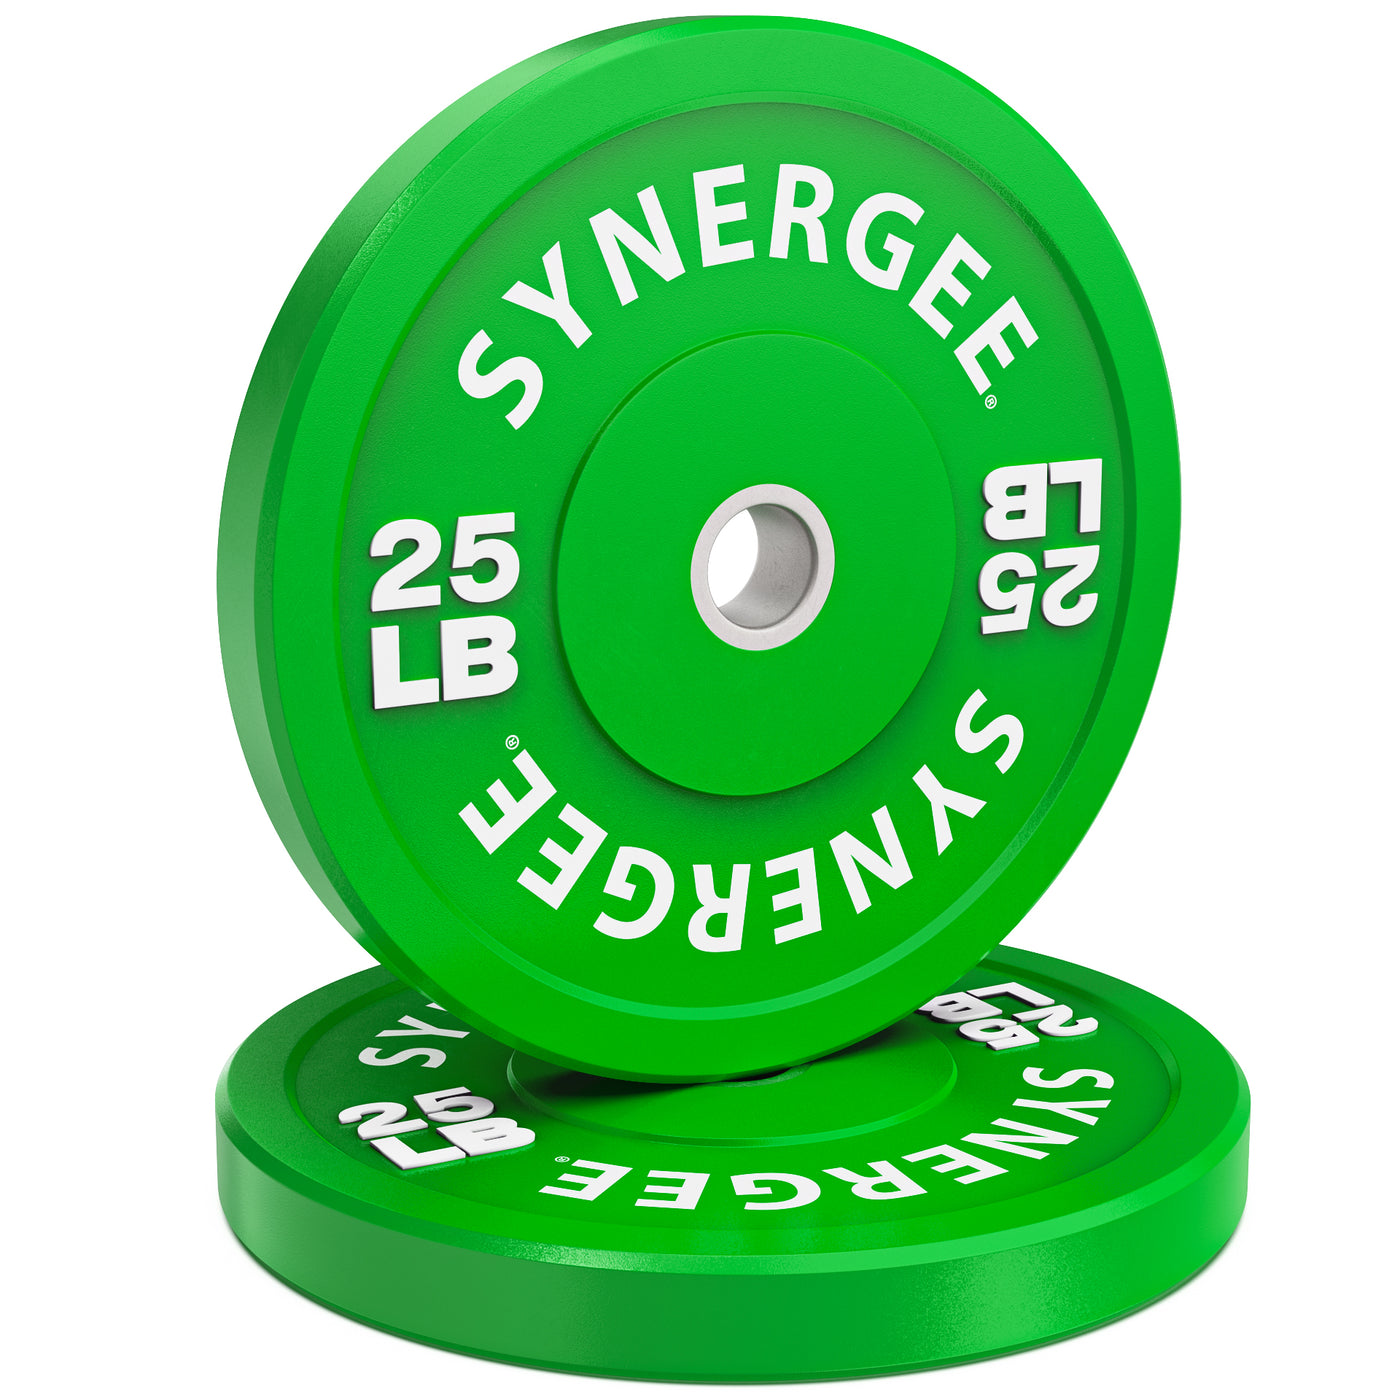 Synergee Bumper Plates - 25lb Color Pair